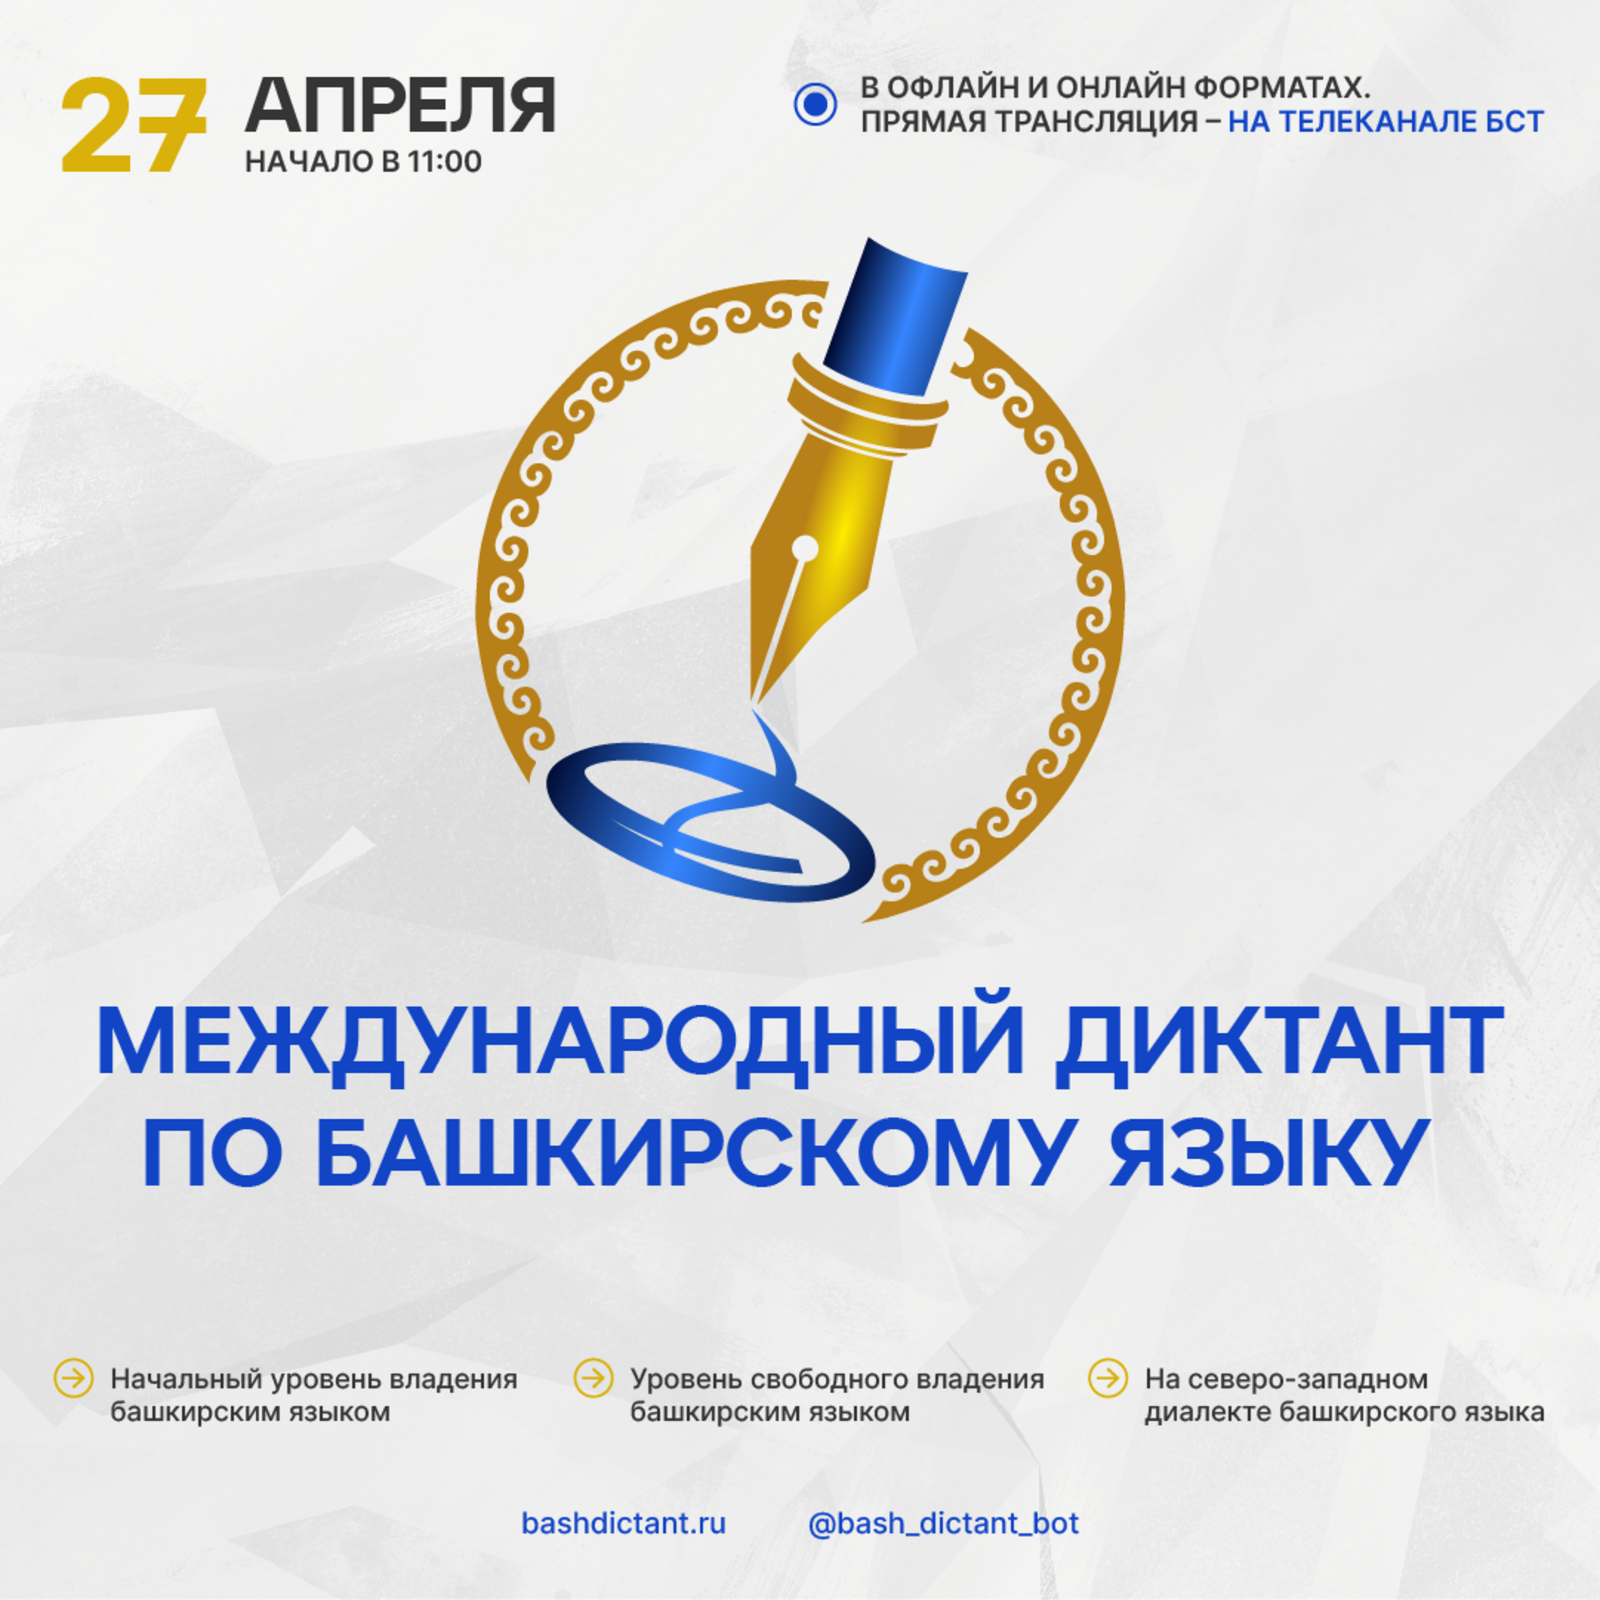 В 27 по 29 апреля пройдет Международный диктант по башкирскому языку